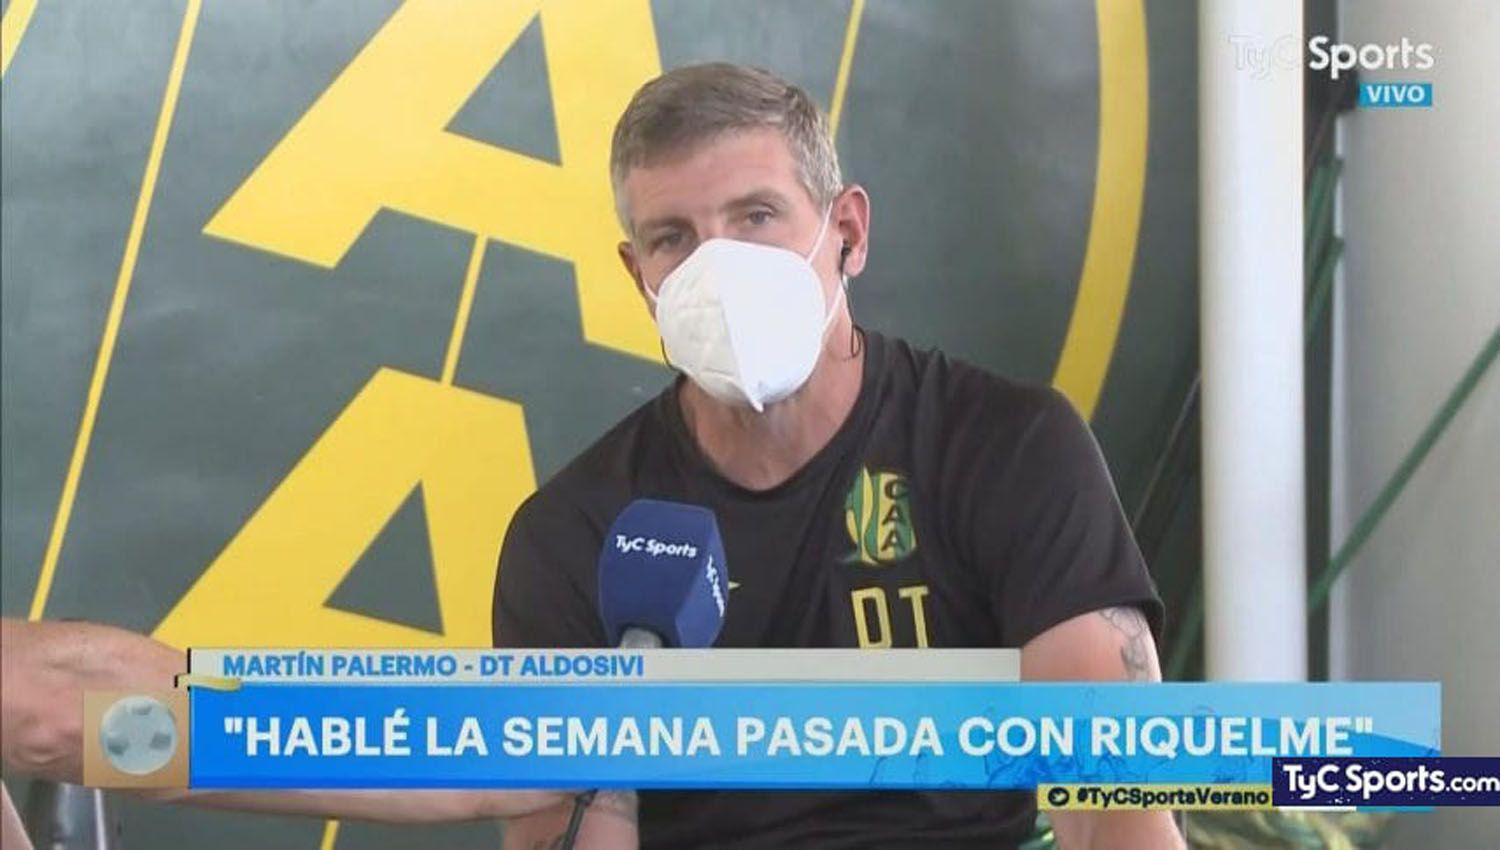 Palermo confioacute que habloacute con Riquelme para pedirle a preacutestamo jugadores del ldquoXeneizerdquo